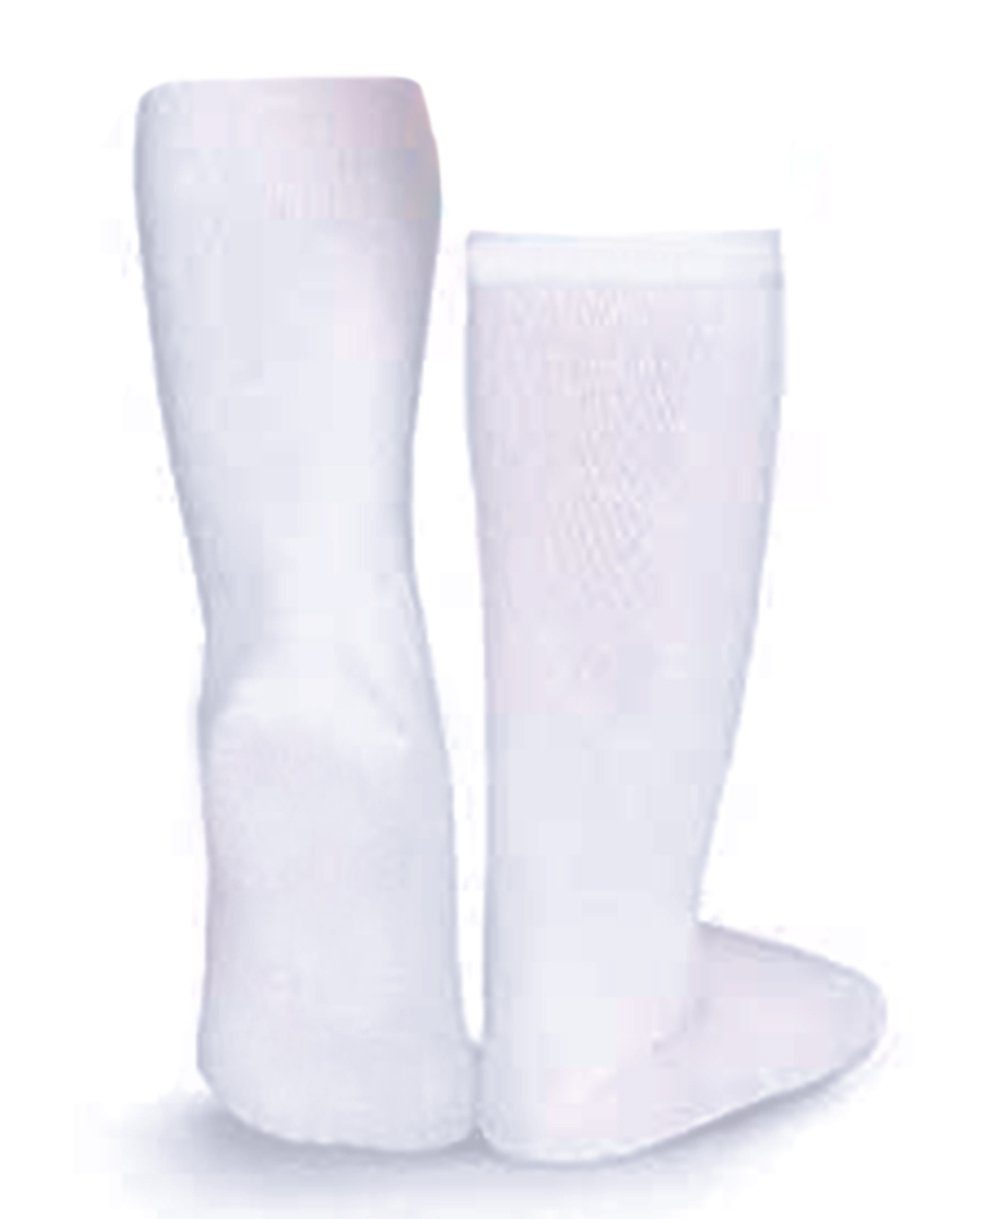 La Bortini Kniestrümpfe Kniestrümpfe lange Socken für Baby Kinder Strümpfe ab 3Mon bis 12J